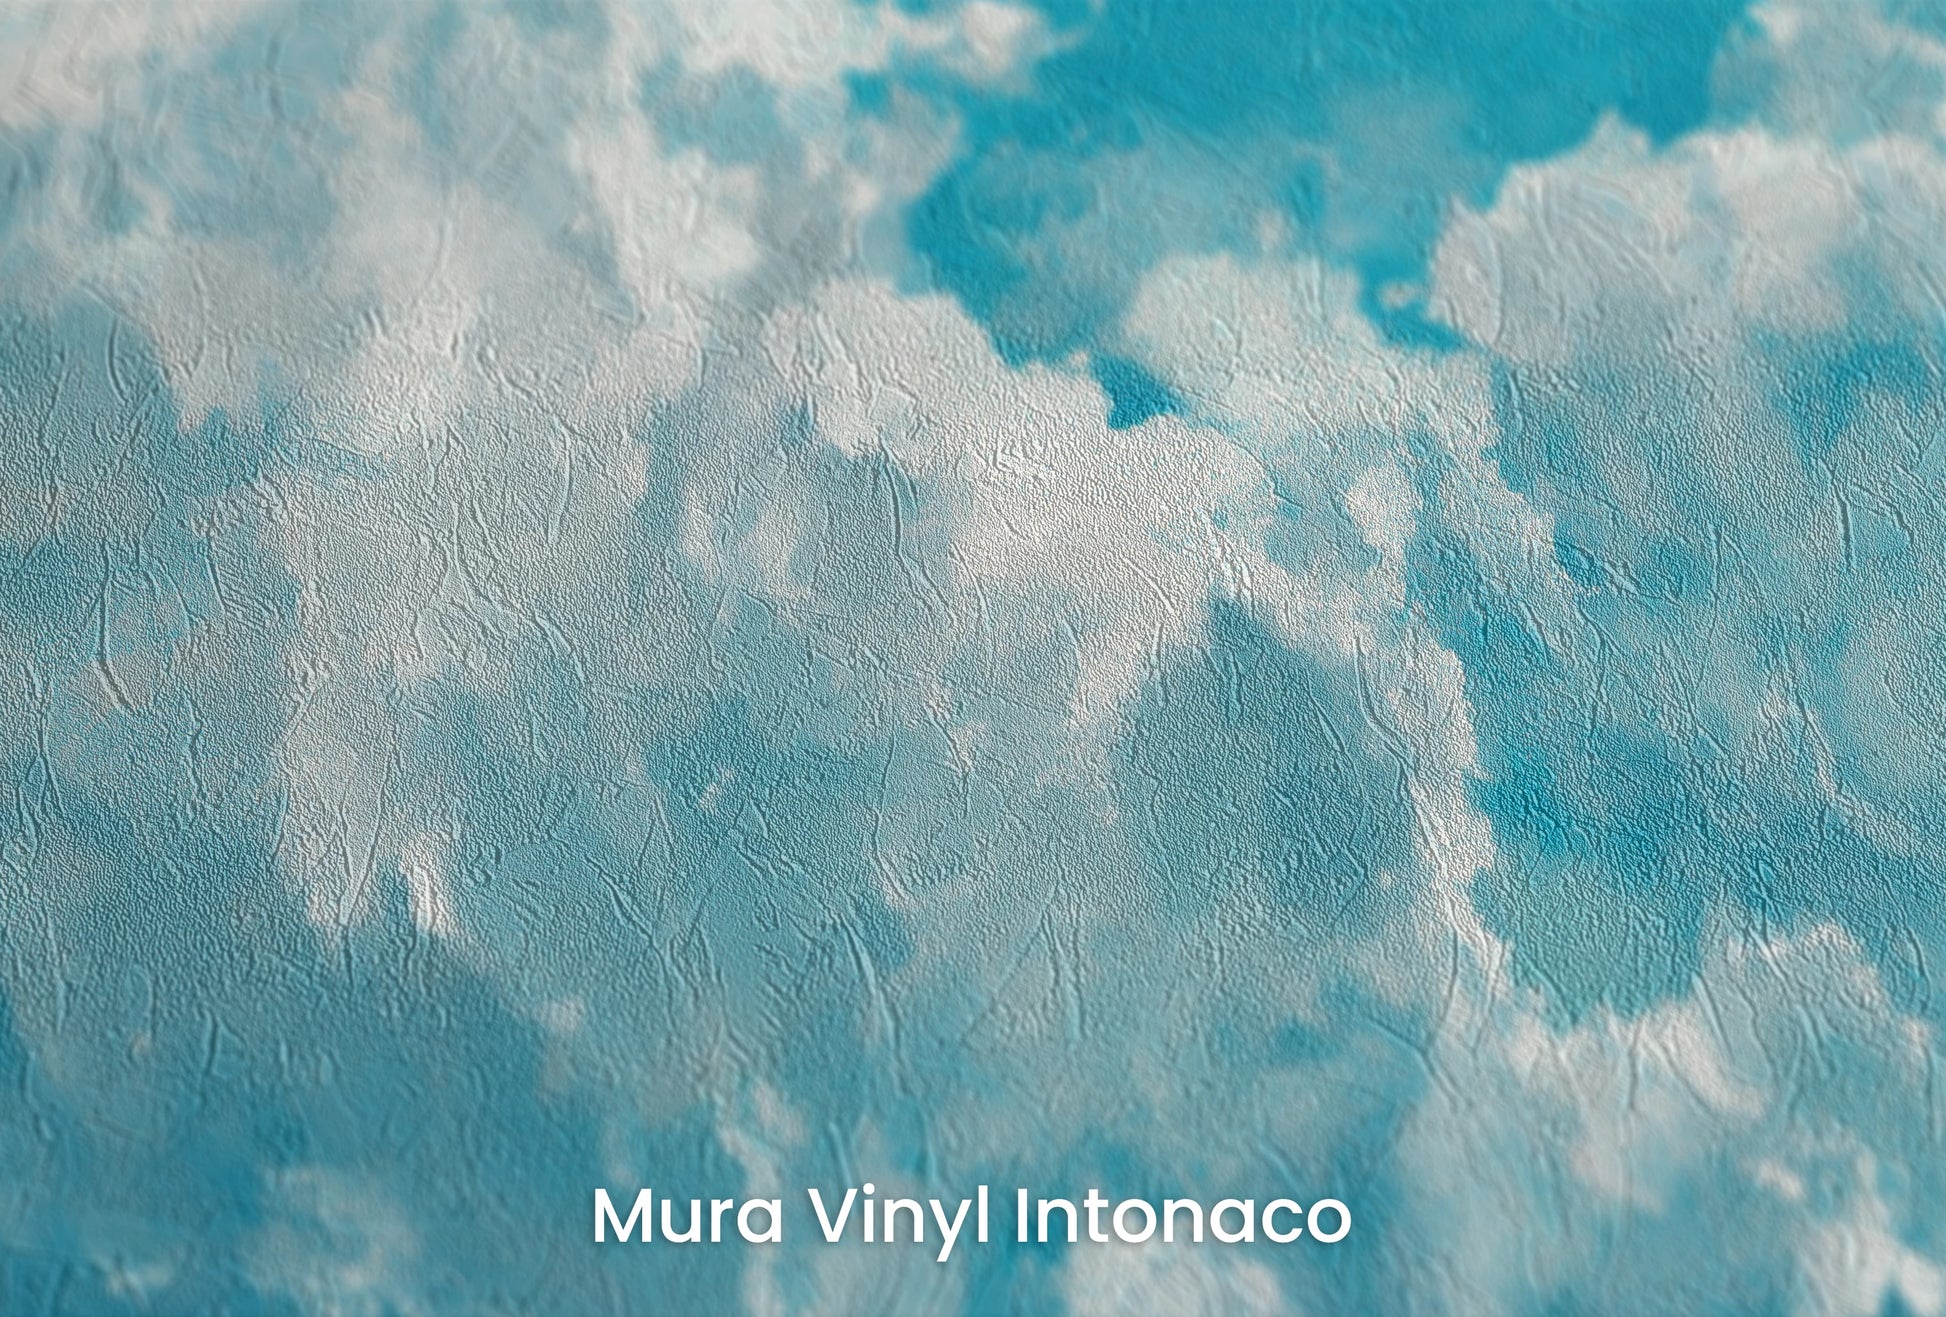 Zbliżenie na artystyczną fototapetę o nazwie Azure Purity na podłożu Mura Vinyl Intonaco - struktura tartego tynku.